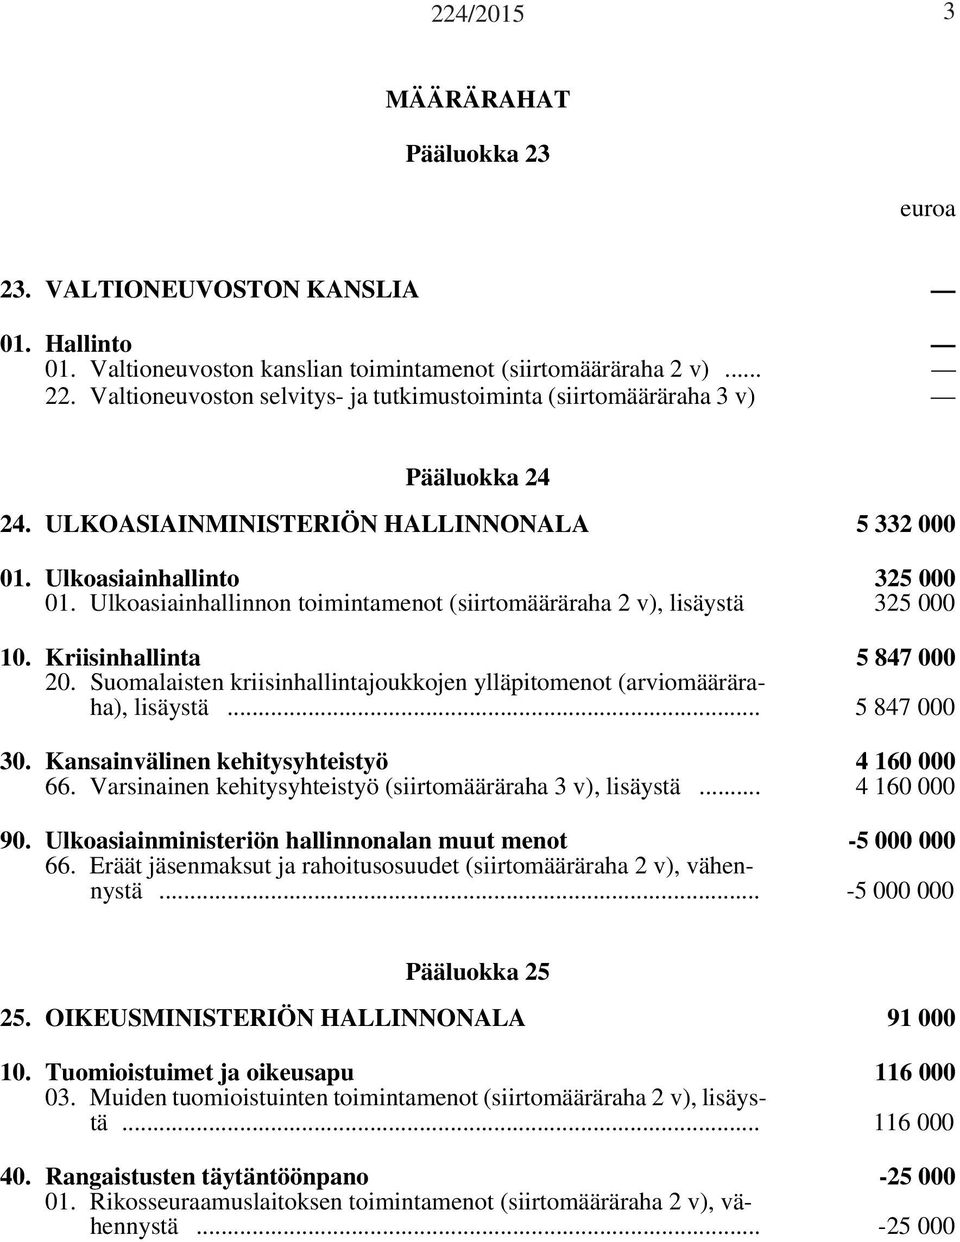 Ulkoasiainhallinnon toimintamenot (siirtomääräraha 2 v), lisäystä 325 000 10. Kriisinhallinta 5 847 000 20. Suomalaisten kriisinhallintajoukkojen ylläpitomenot (arviomääräraha), lisäystä.